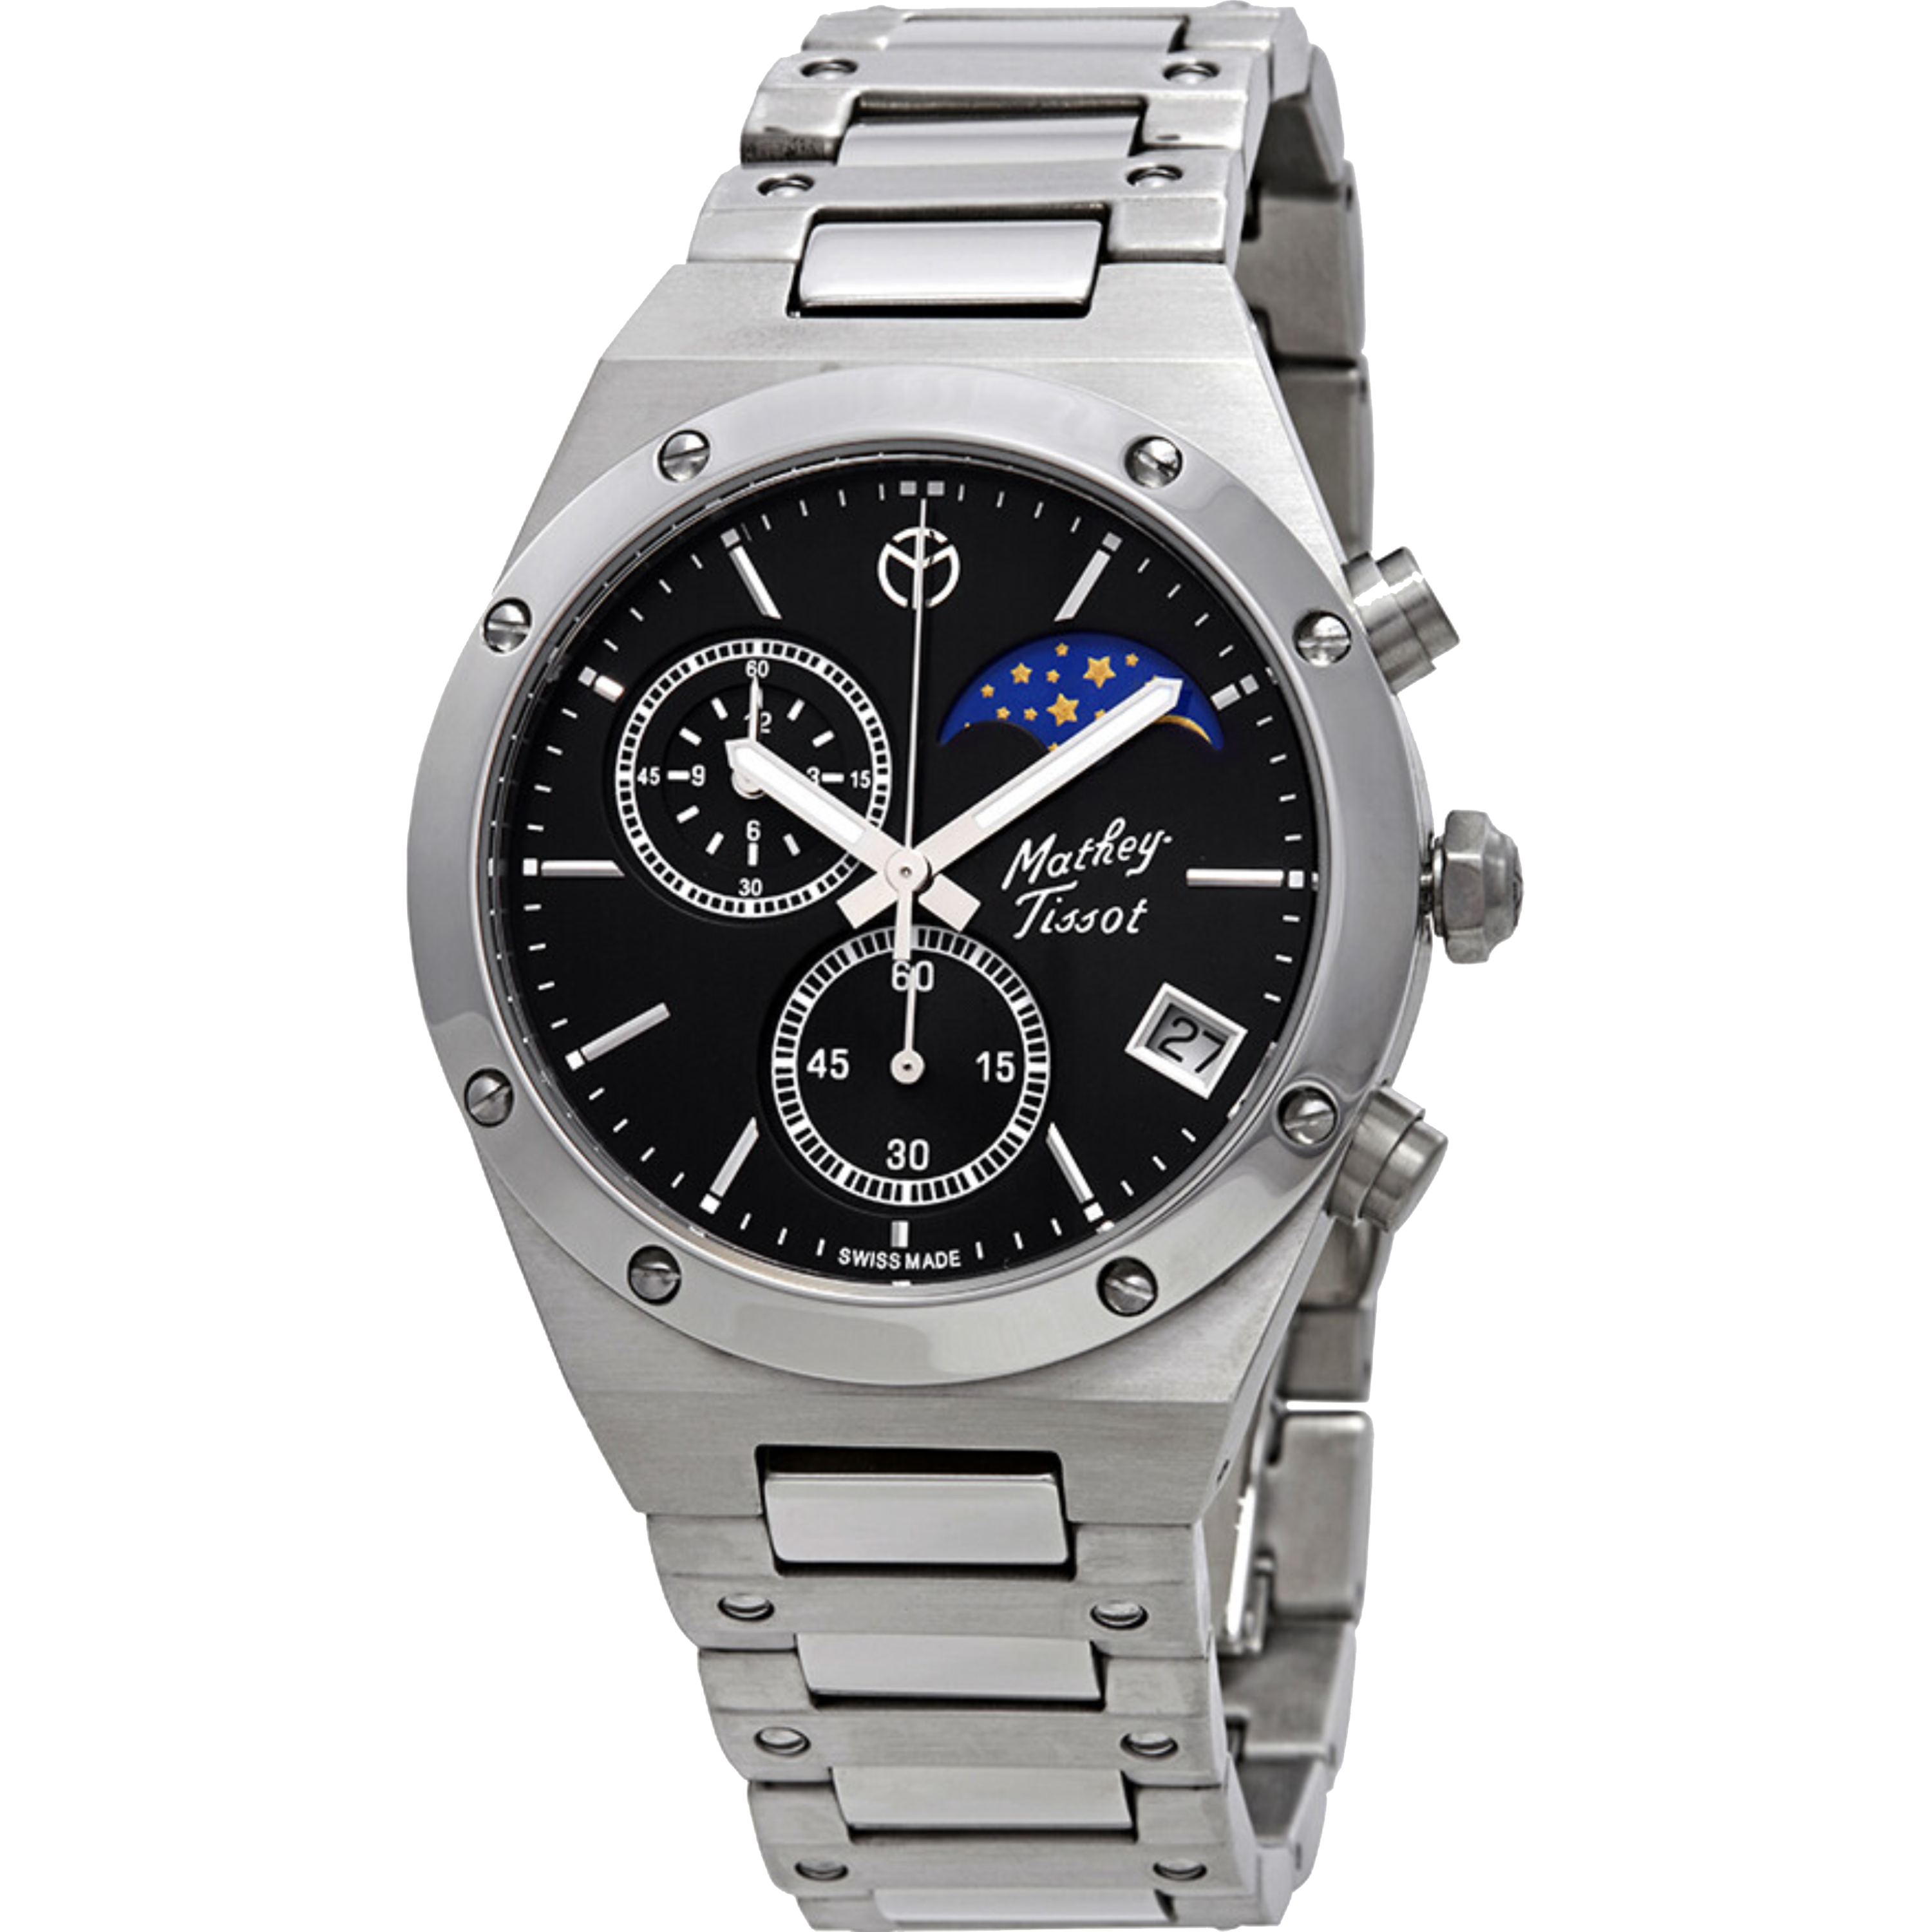 שעון יד לגבר Mathey Tissot H680CHAN 42mm צבע כסף/שחור - אחריות לשנה ע"י היבואן